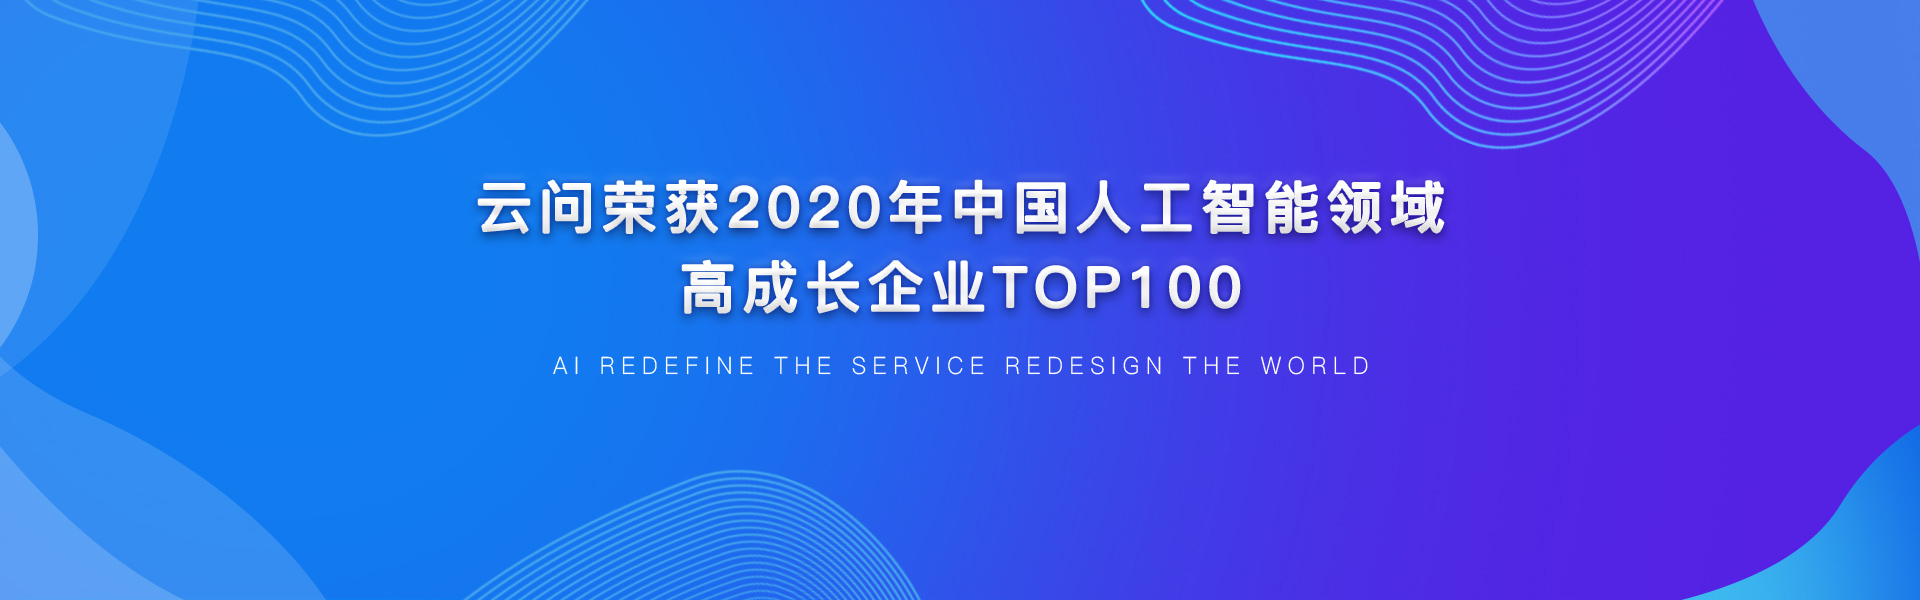 云问荣获2020年中国人工智能领域高成长企业TOP100